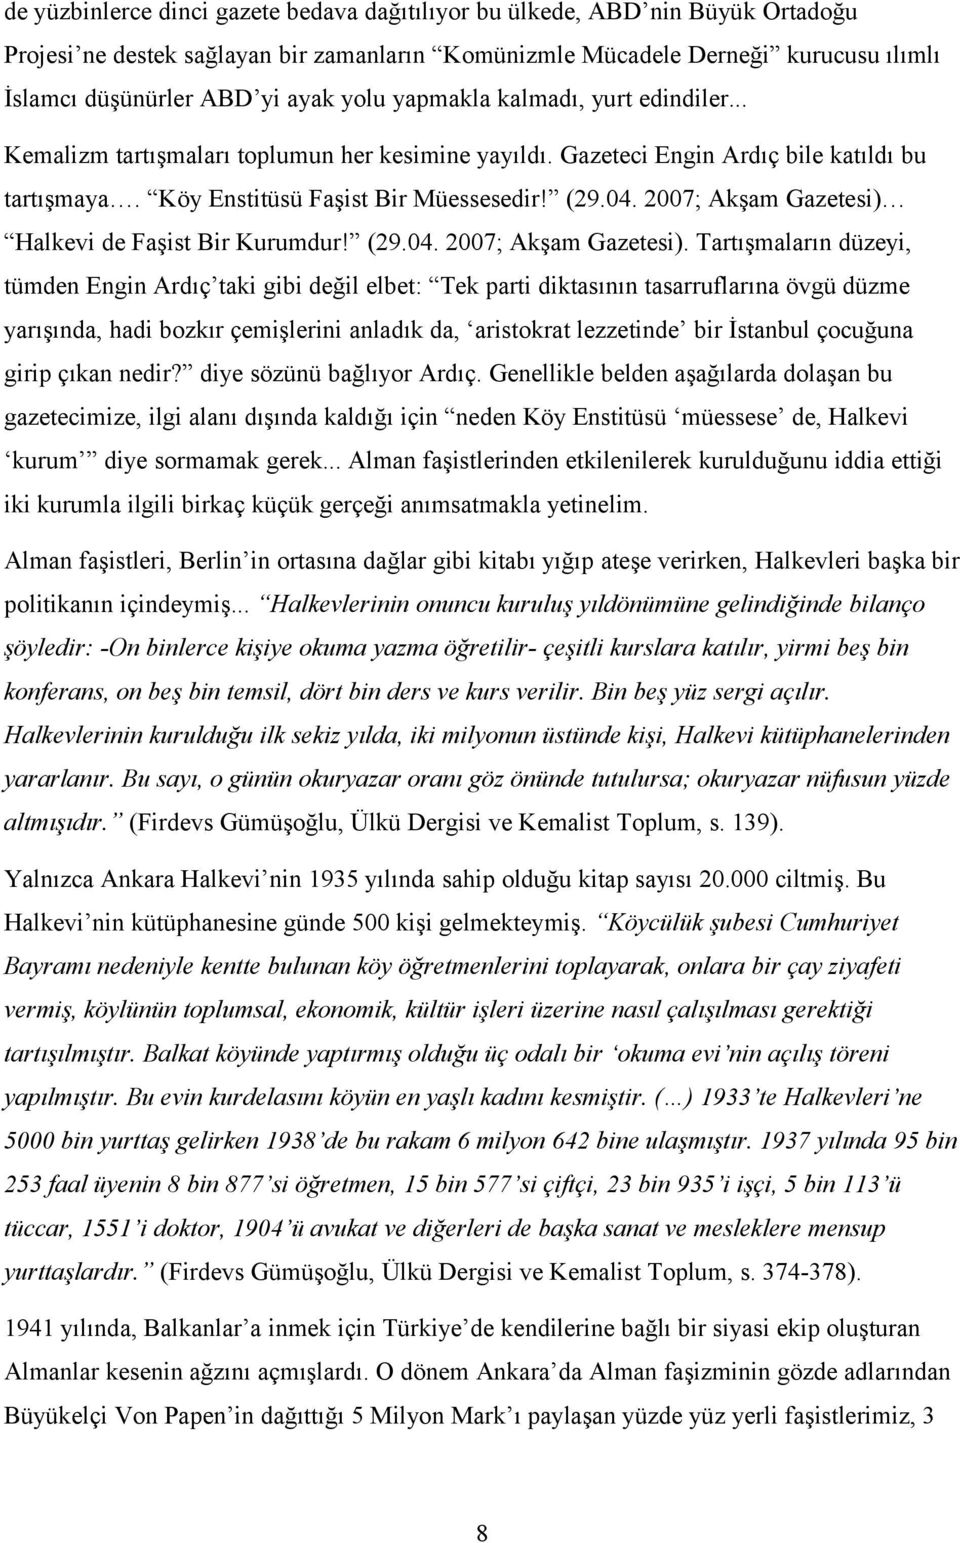 2007; Akşam Gazetesi) Halkevi de Faşist Bir Kurumdur! (29.04. 2007; Akşam Gazetesi).